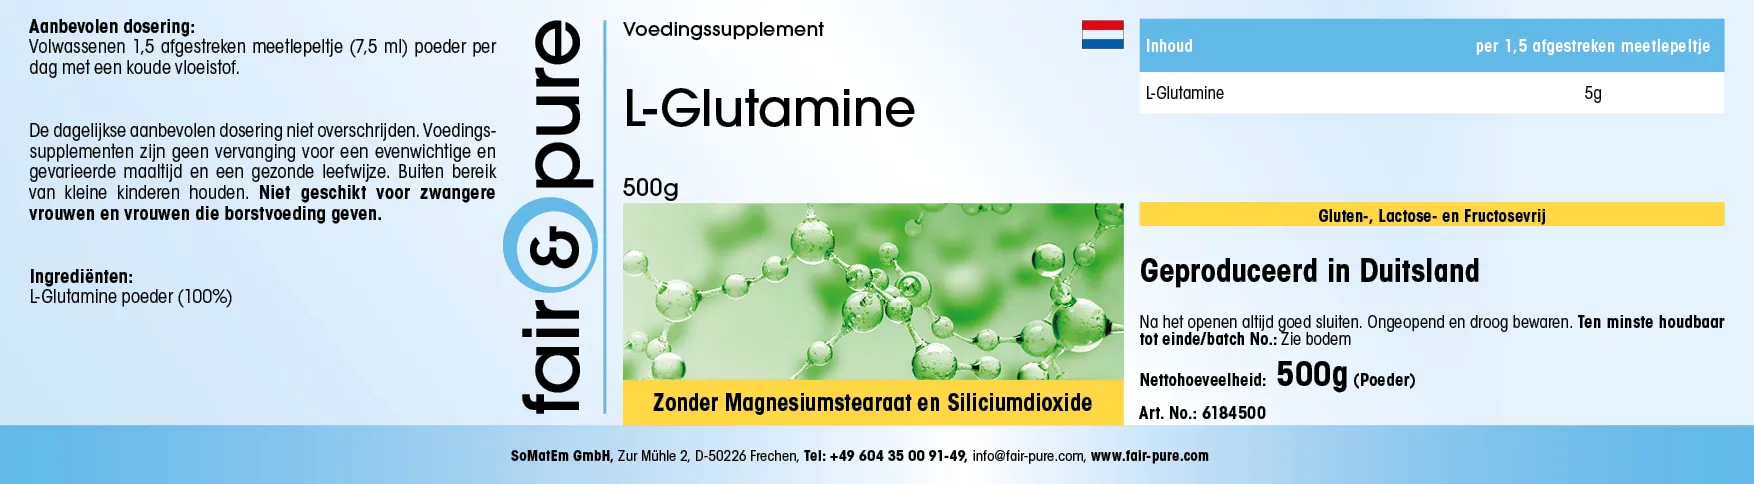 L-Glutamin - 500g Pulver